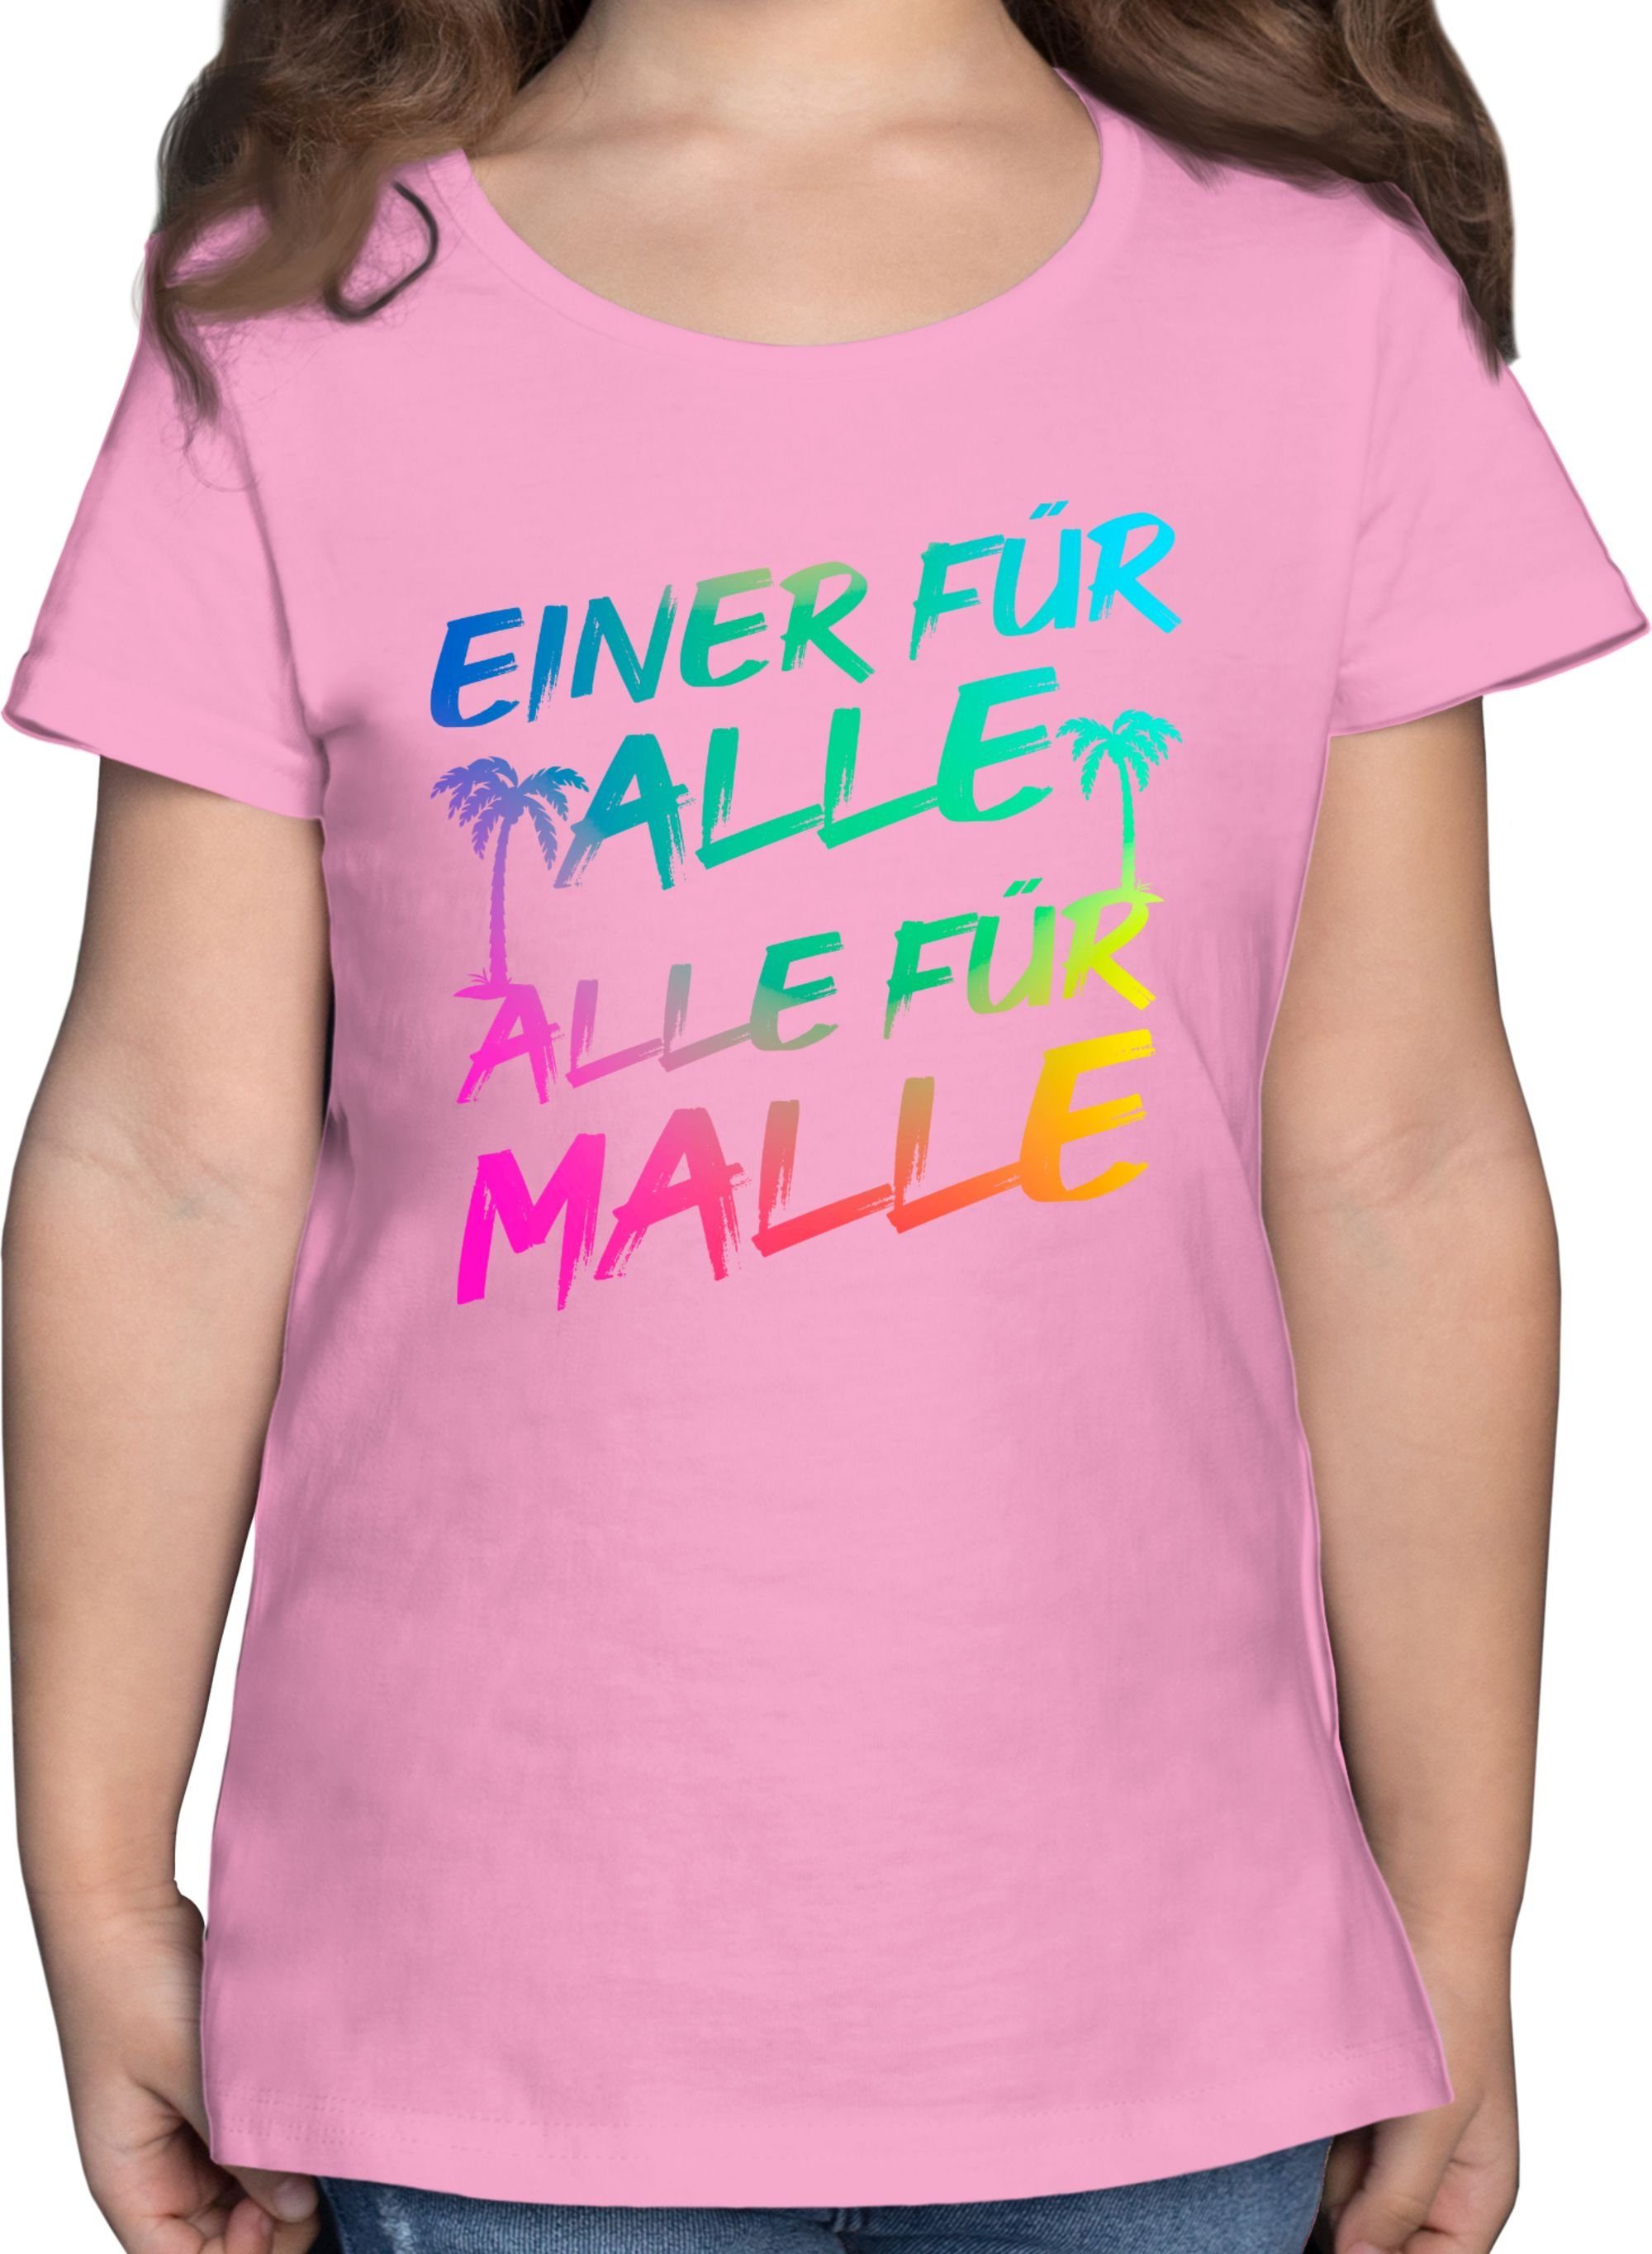 Shirtracer T-Shirt Malle für Alle - Einer für alle Alle für Malle Sommerurlaub Mädchen 2 Rosa